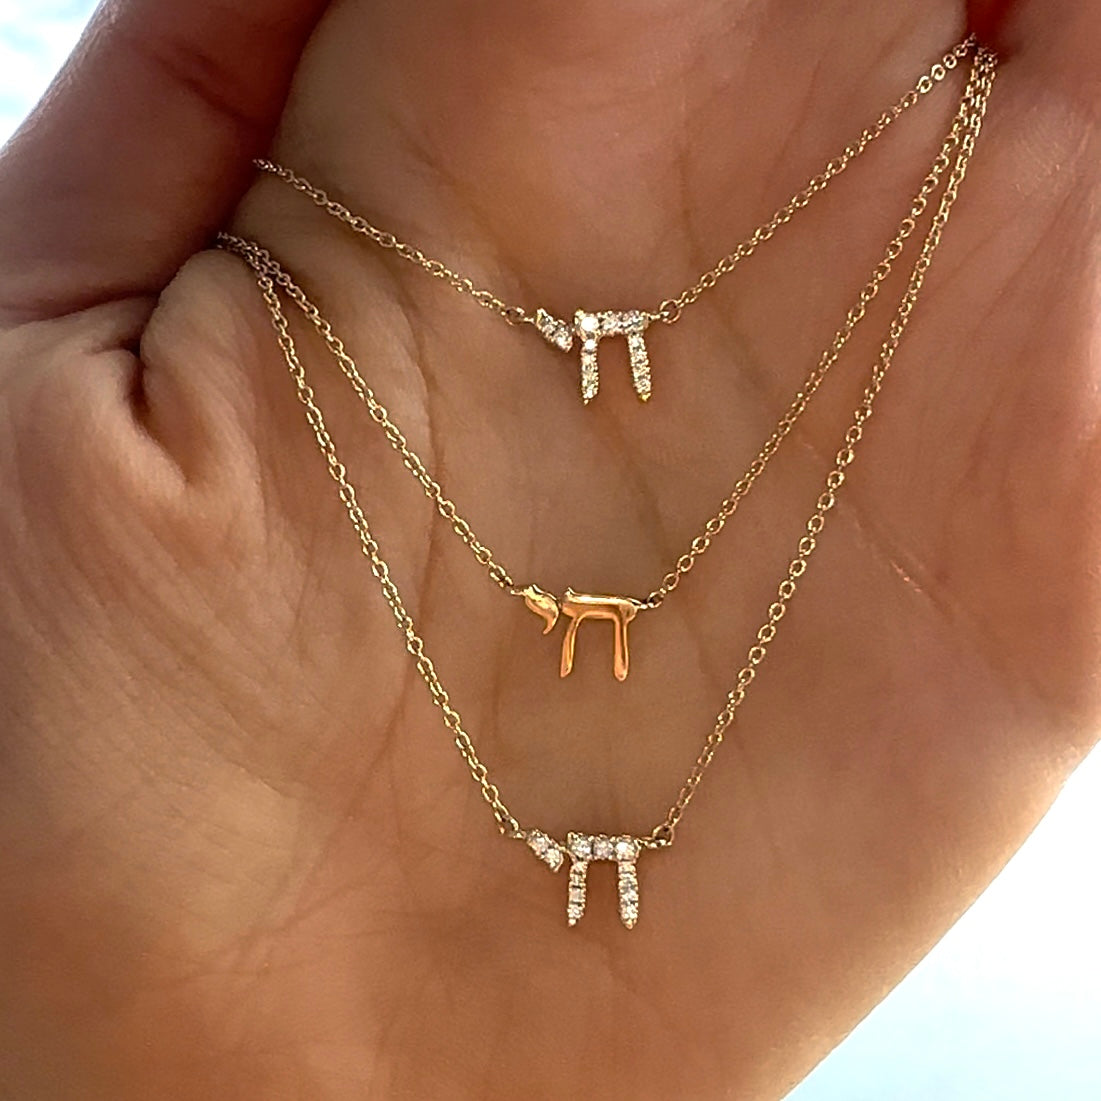 14K Gold Hebrew Chai Necklace Necklaces by Izakov Diamonds + Fine Jewelry | Izakov